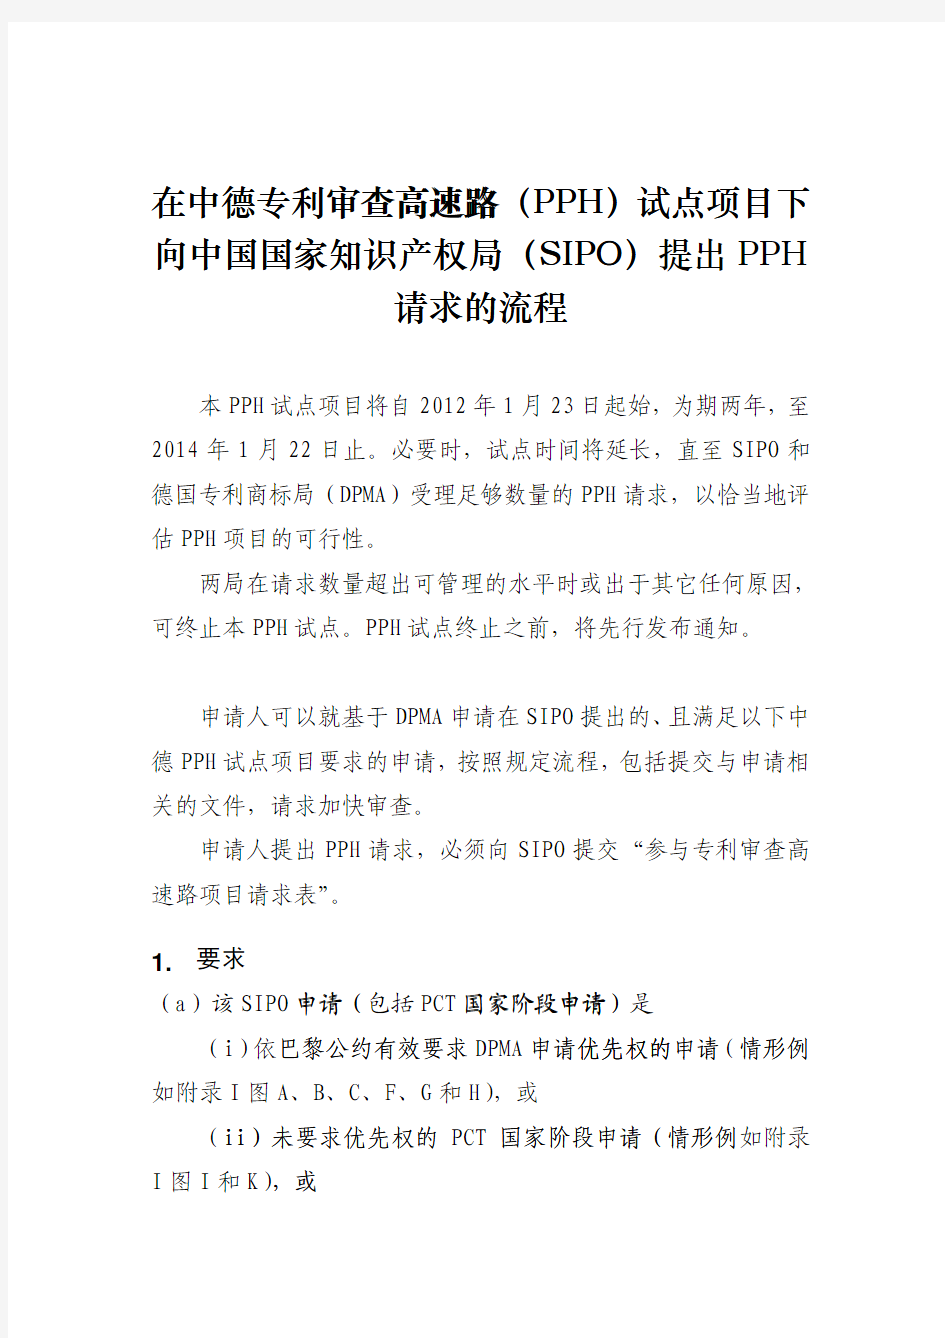 在中德专利审查高速路(PPH)试点项目下向中国国家知识产权局(SIPO)提出PPH请求的流程